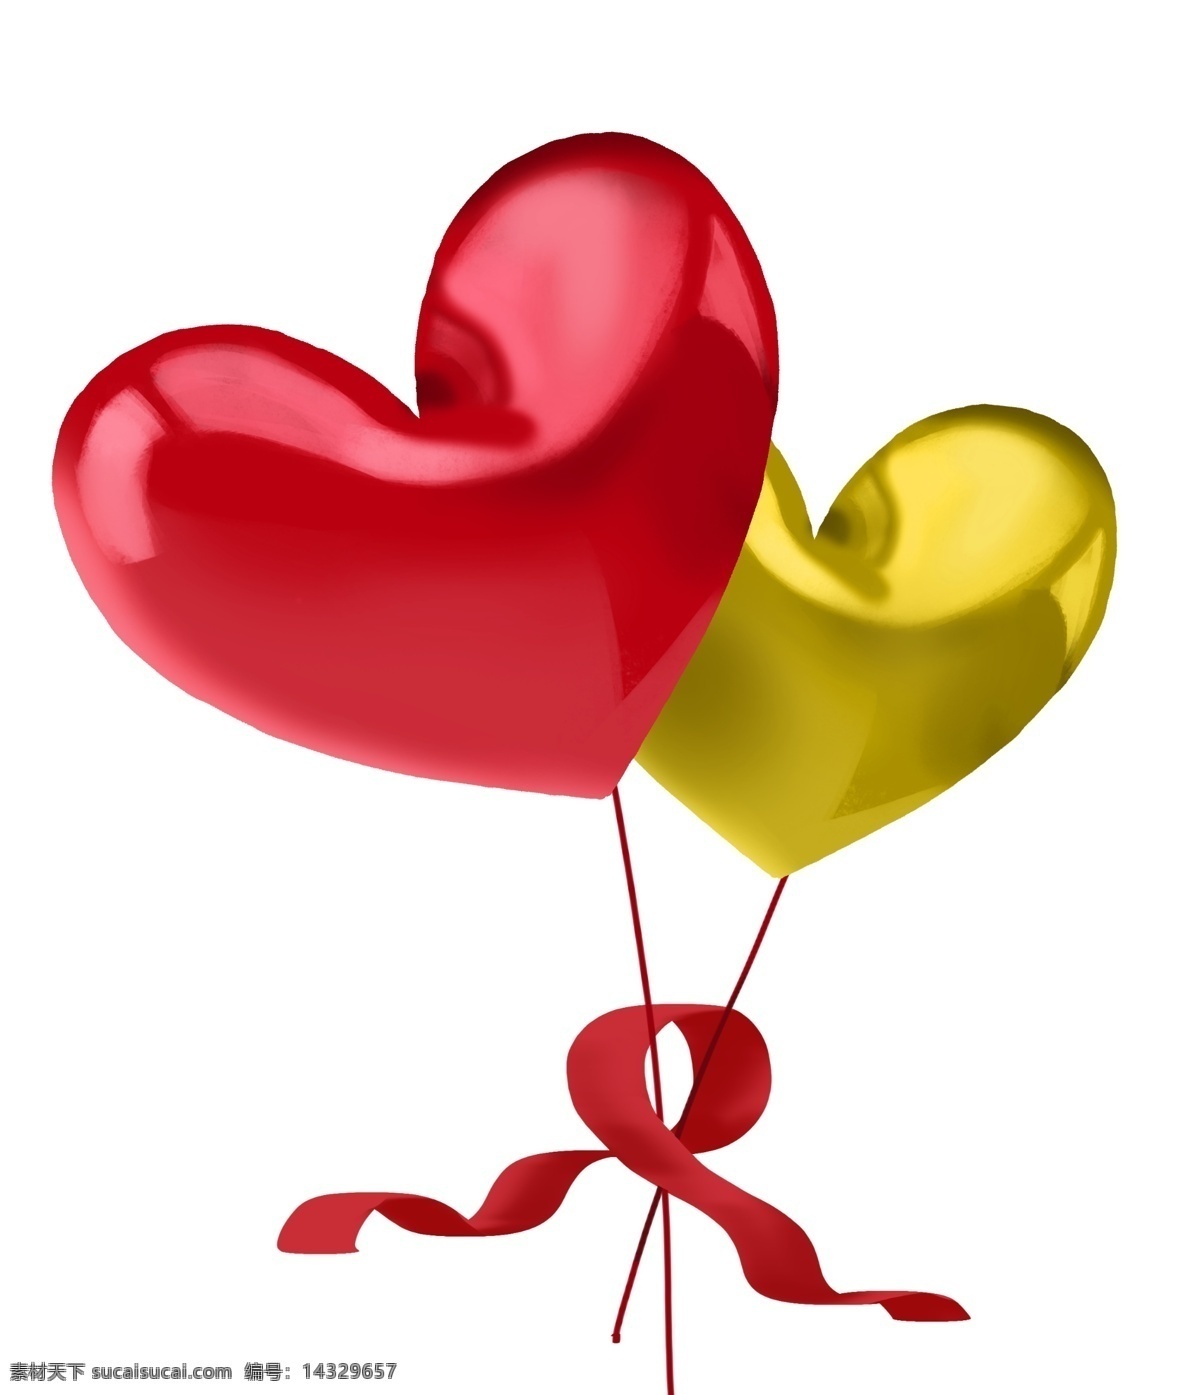 两个 心形 气球 插画 两个气球 红色的气球 心形气球 黄色气球 红色丝带装饰 漂浮的气球 气球装饰插画